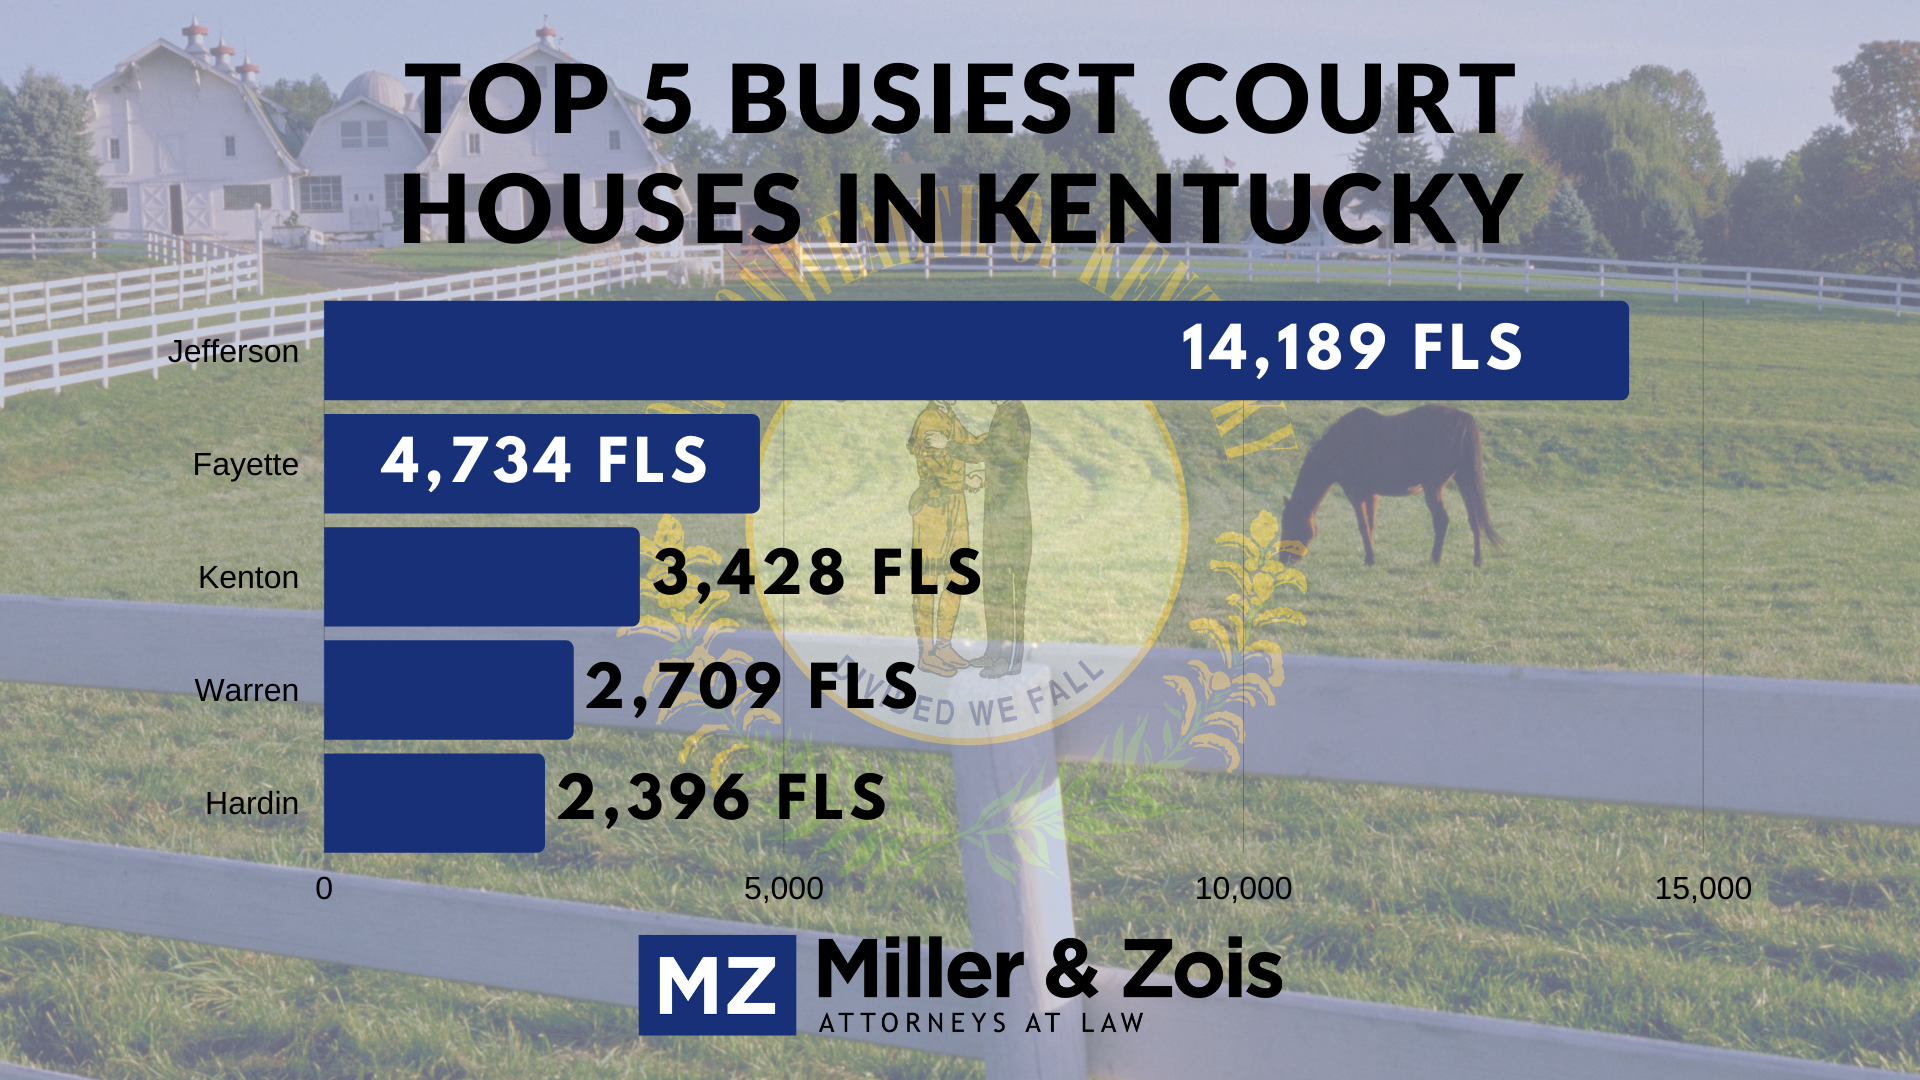 Kentucky court houses